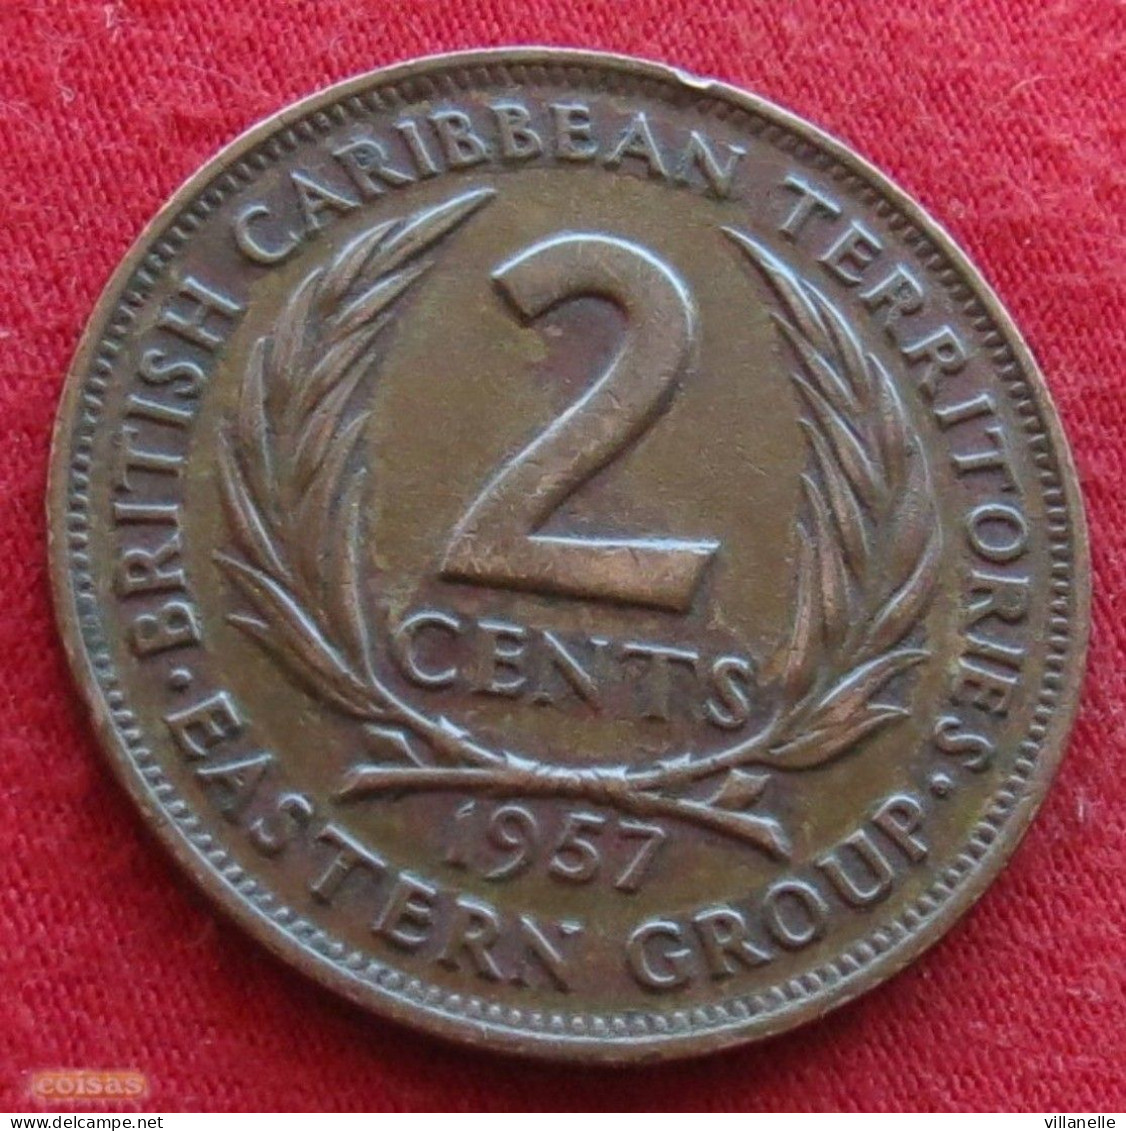 British Caribbean Territories 2 Cents 1957 KM# 3 *V2T Caraibas Caraibes Orientales - Britse Caribische Gebieden